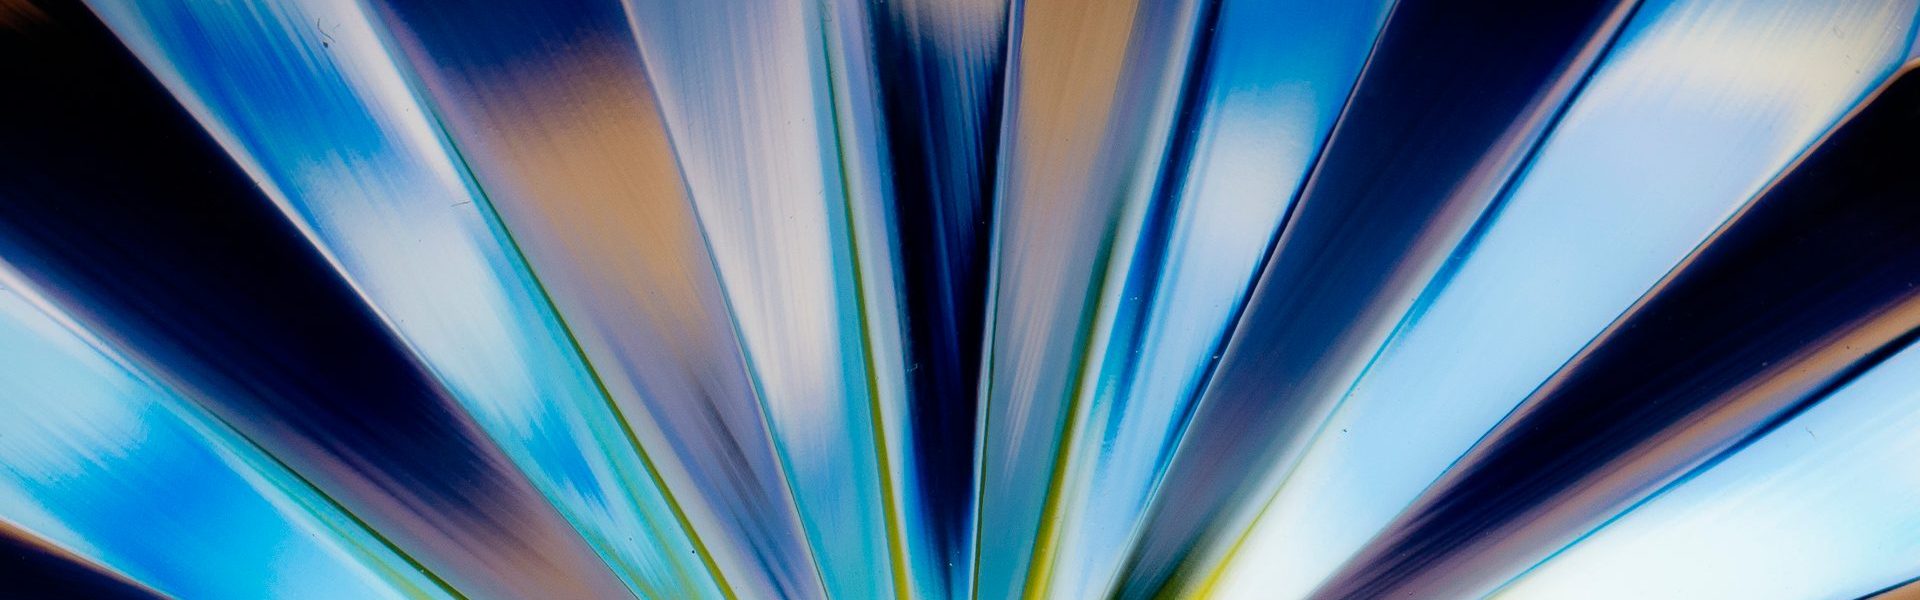 abstract billede af farverne blå, lilla grøn og hvide